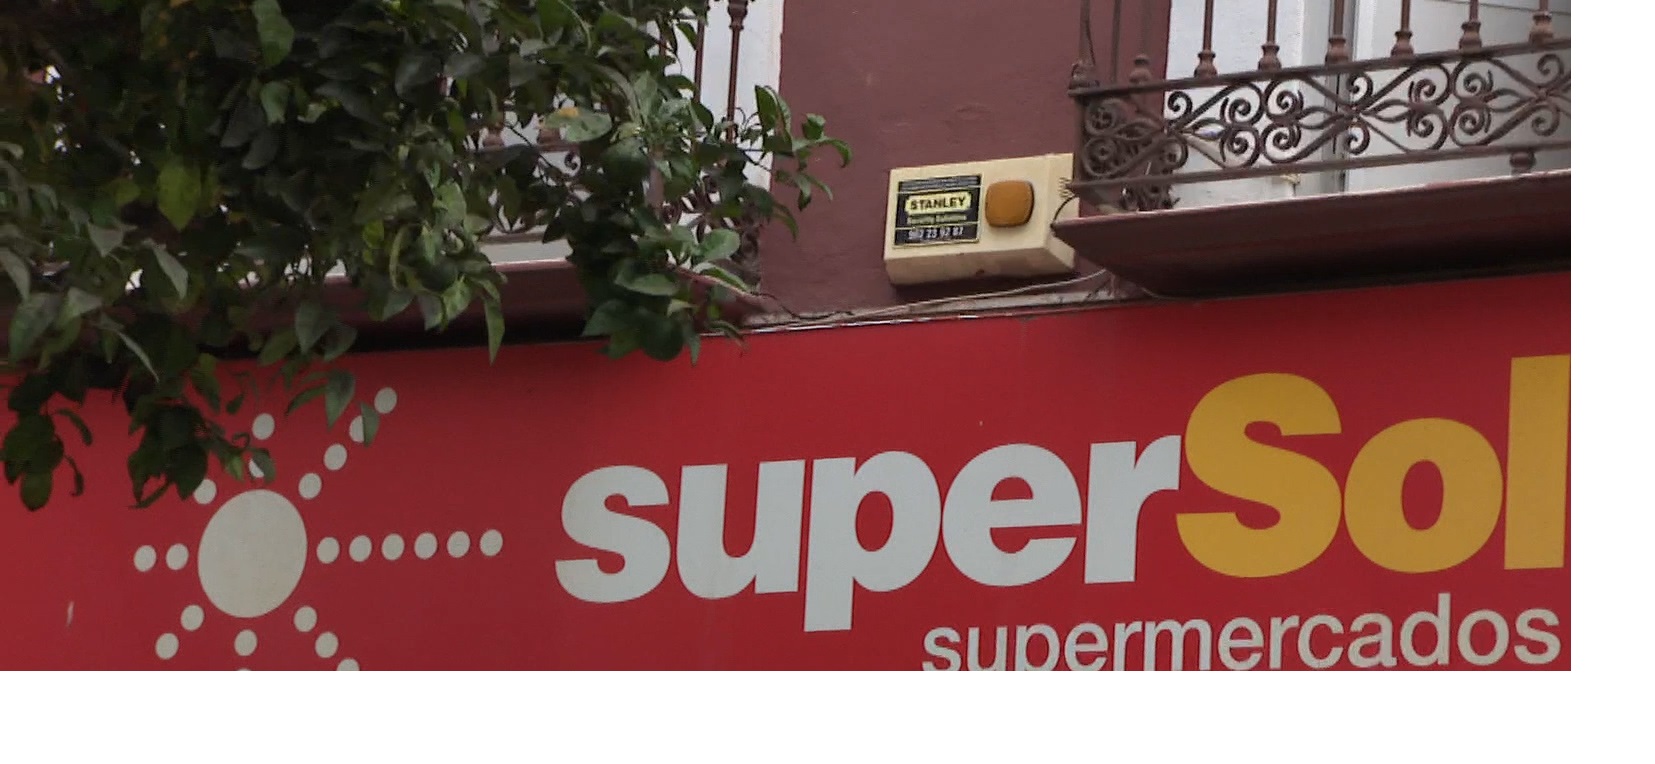 supersol, supermercados, programapublicidad